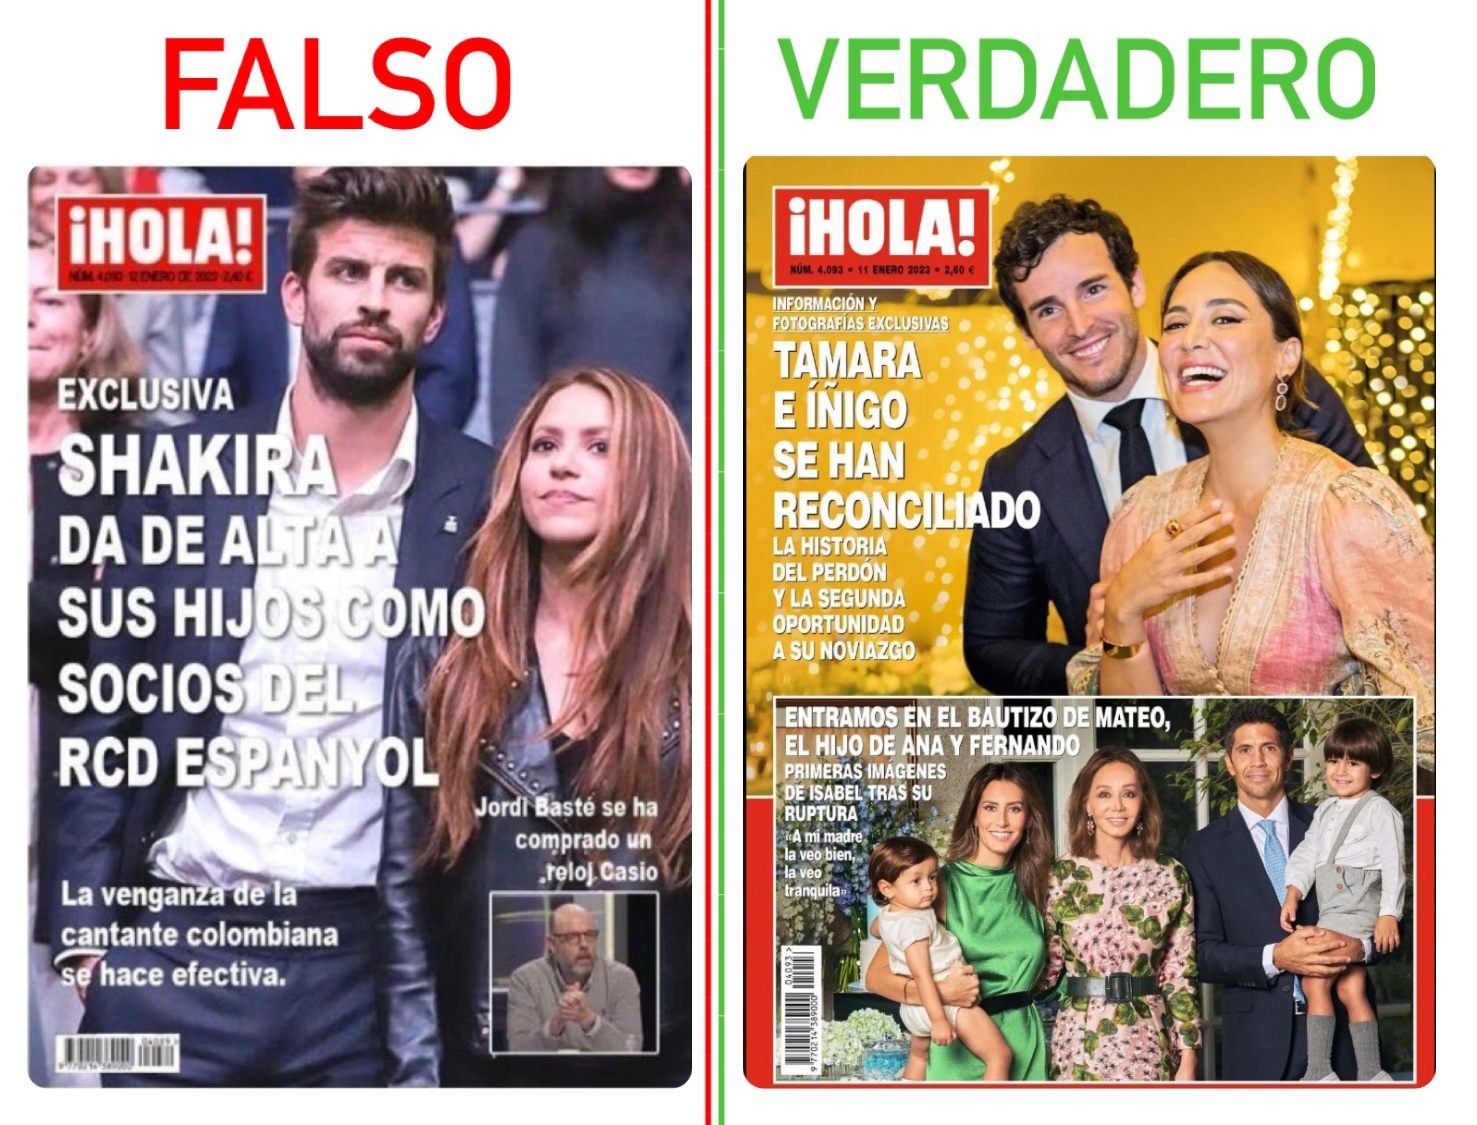 La revista no ha publicado que Shakira asoció a sus hijos en el club RCD Spanyol – Bolívia verifica